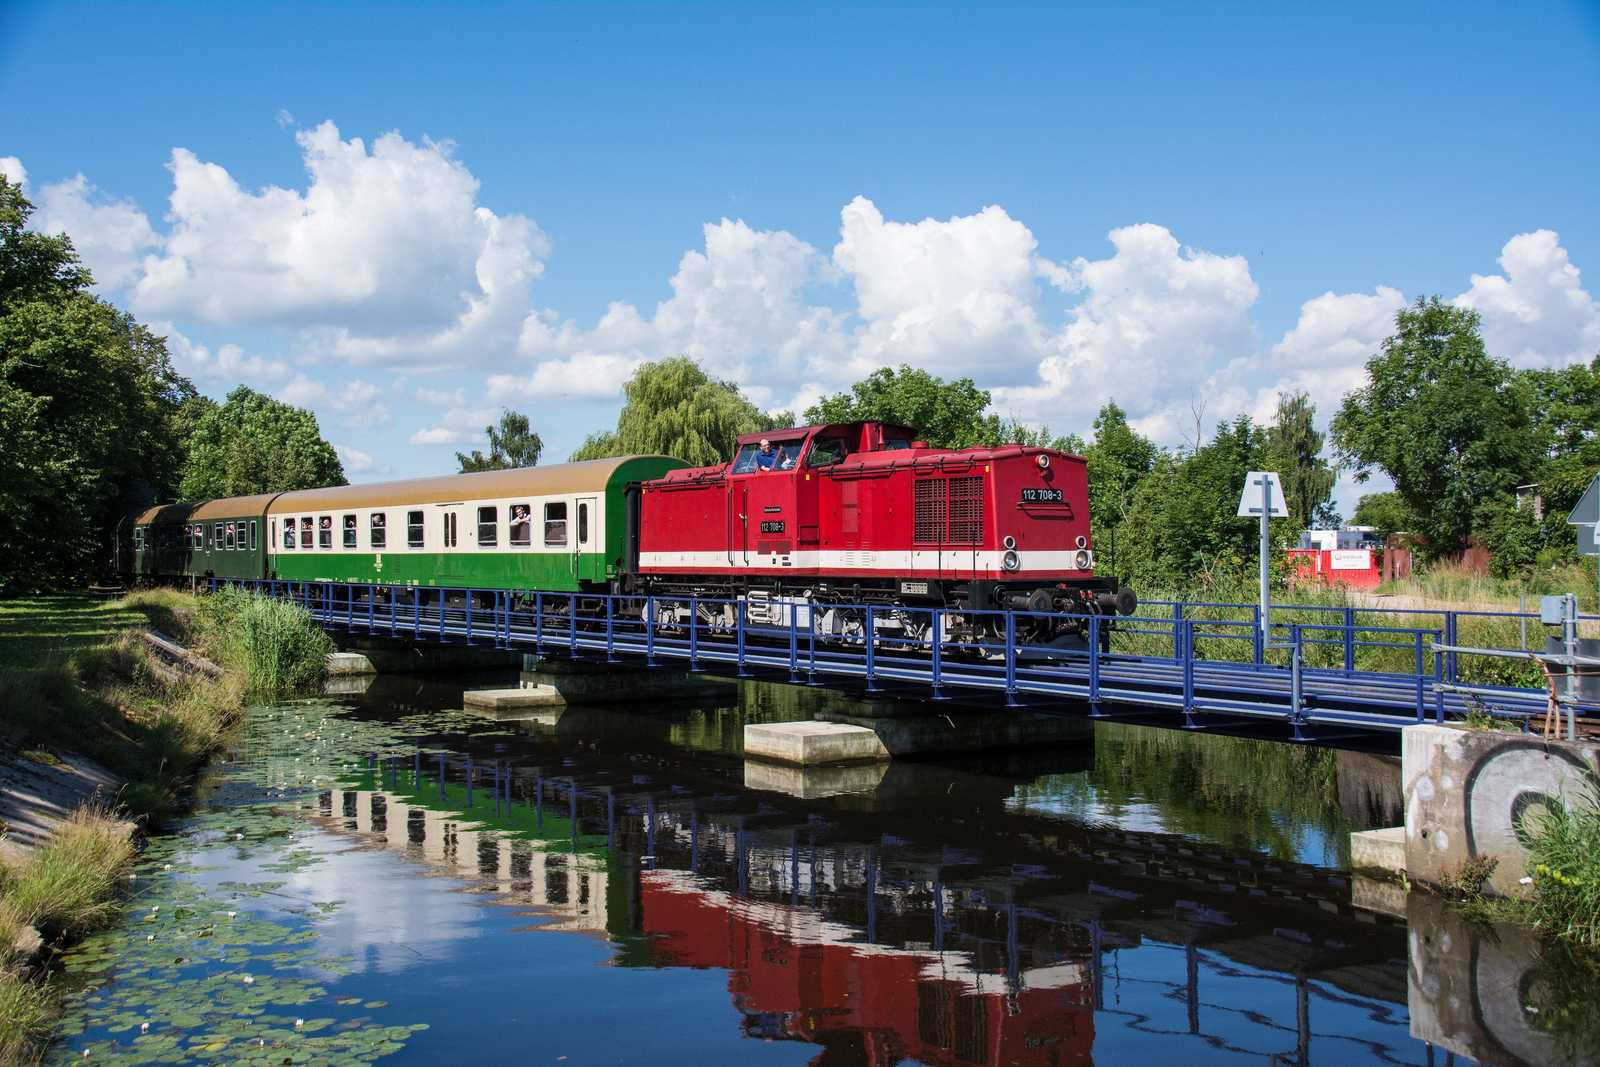 Am folgenden Wochenende war der selbe Zug auf der Greifswalder Hafenbahn unterwegs. Kurz vor dem Museumshafen Greifswald lichtete ihn „Dampfachim“ am 15. Juli 2017 auf der Ryckbrücke ab.